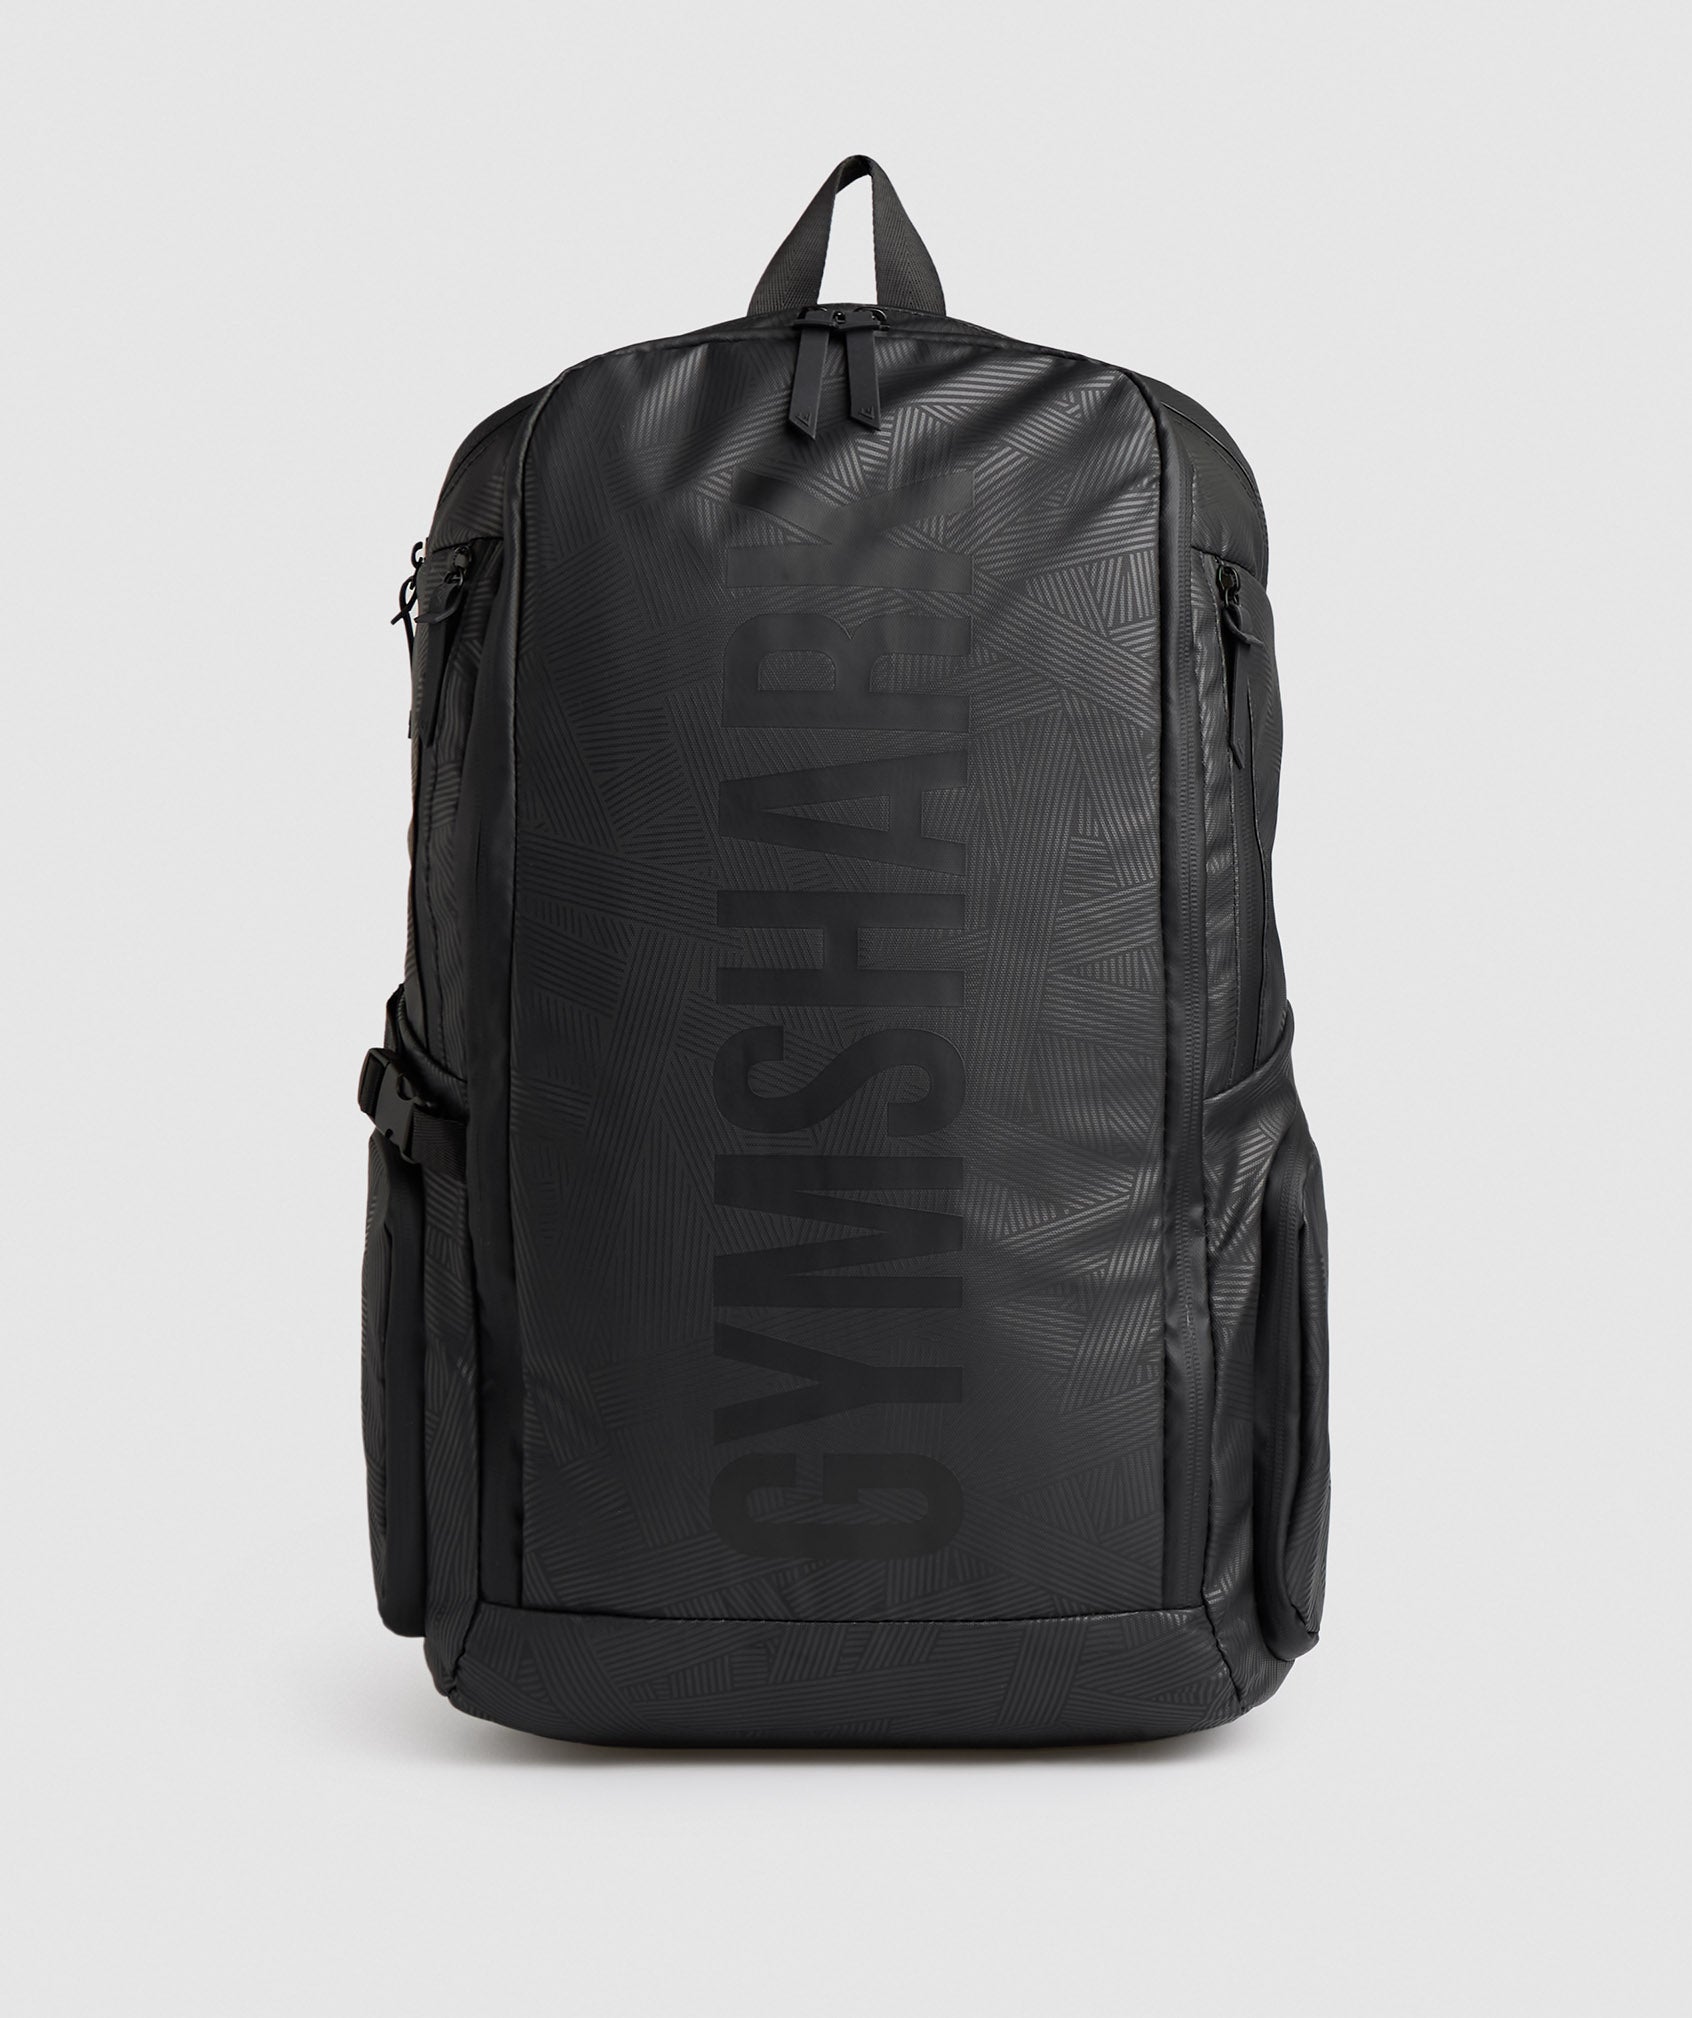 X-Series 0.3 Backpack in Black Print